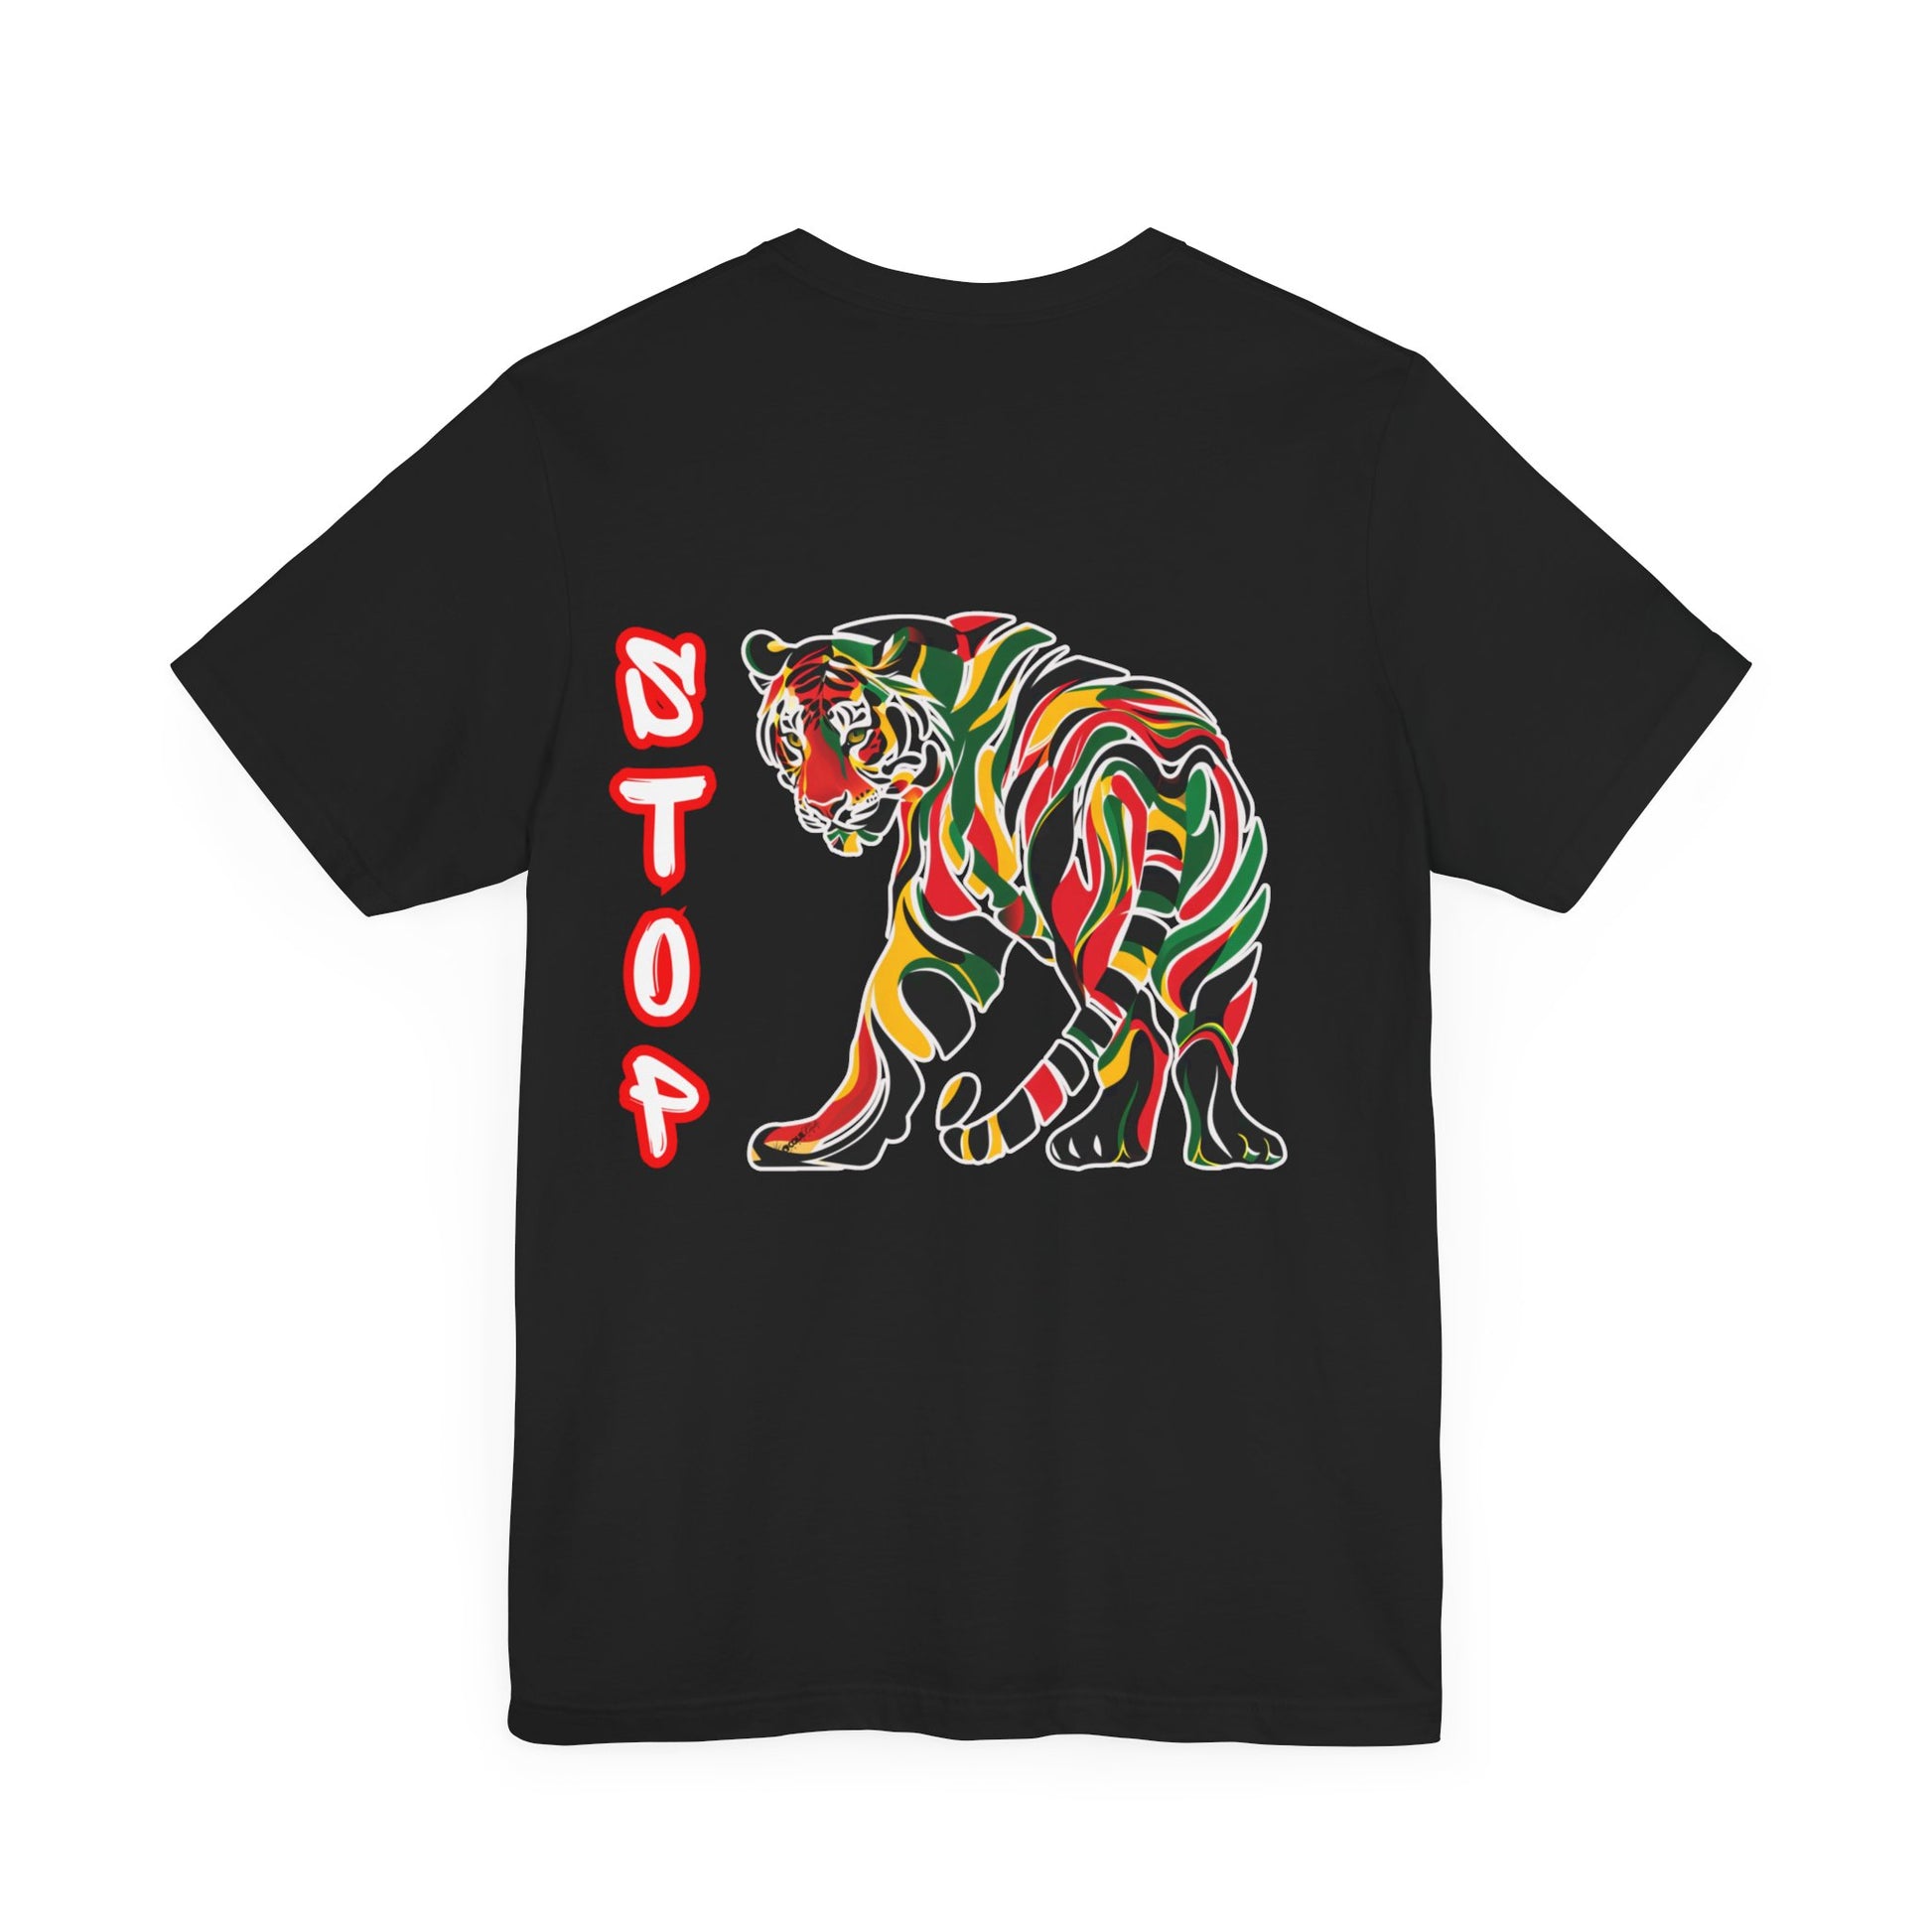 Stop Speaking Death Tee Shirt - Pan-African Tiger Art, Empowering Message Shirt, black tee shirt